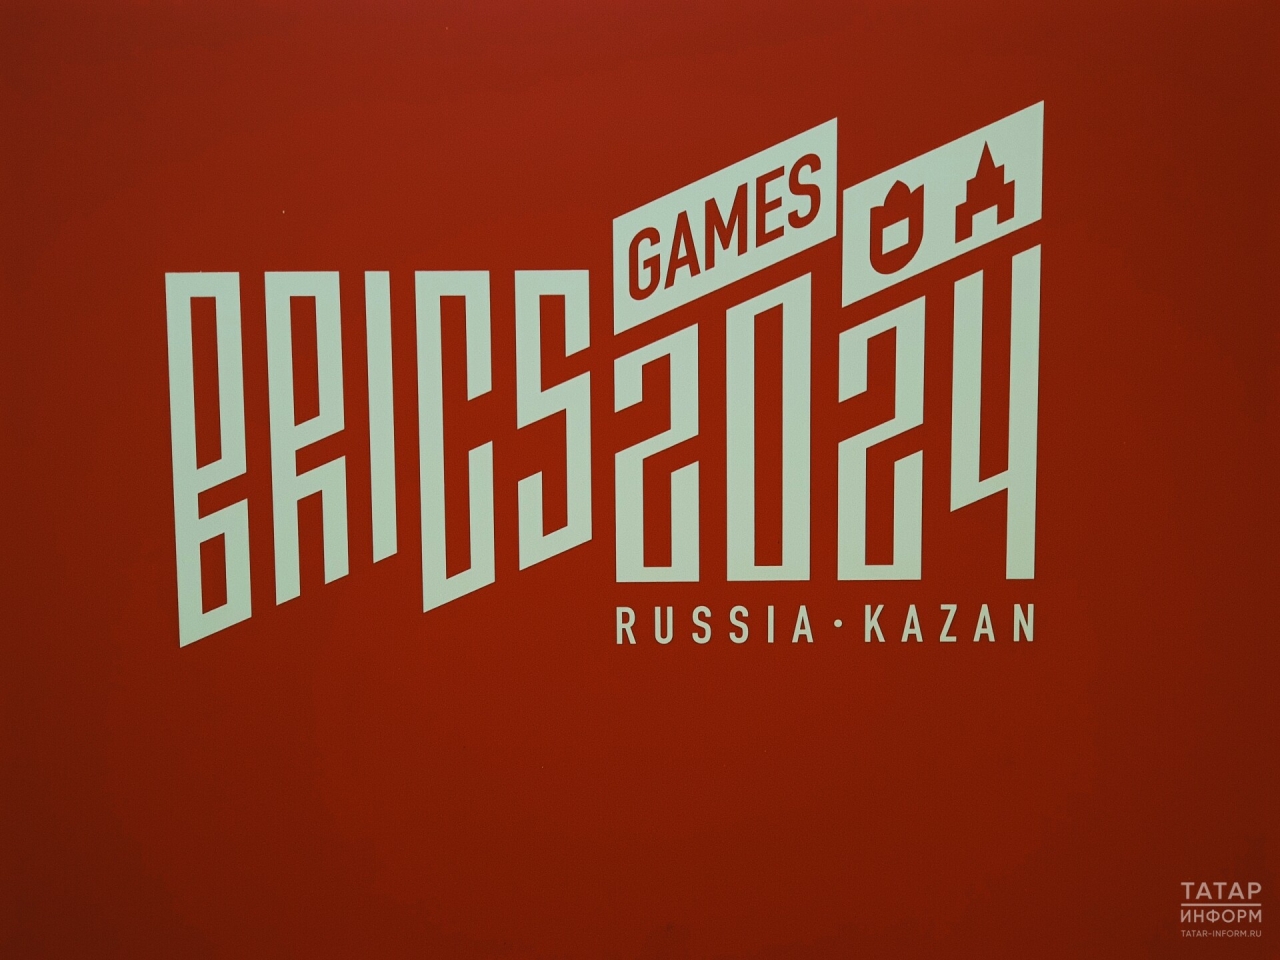 Сборная России досрочно победила в медальном зачете Игр БРИКС